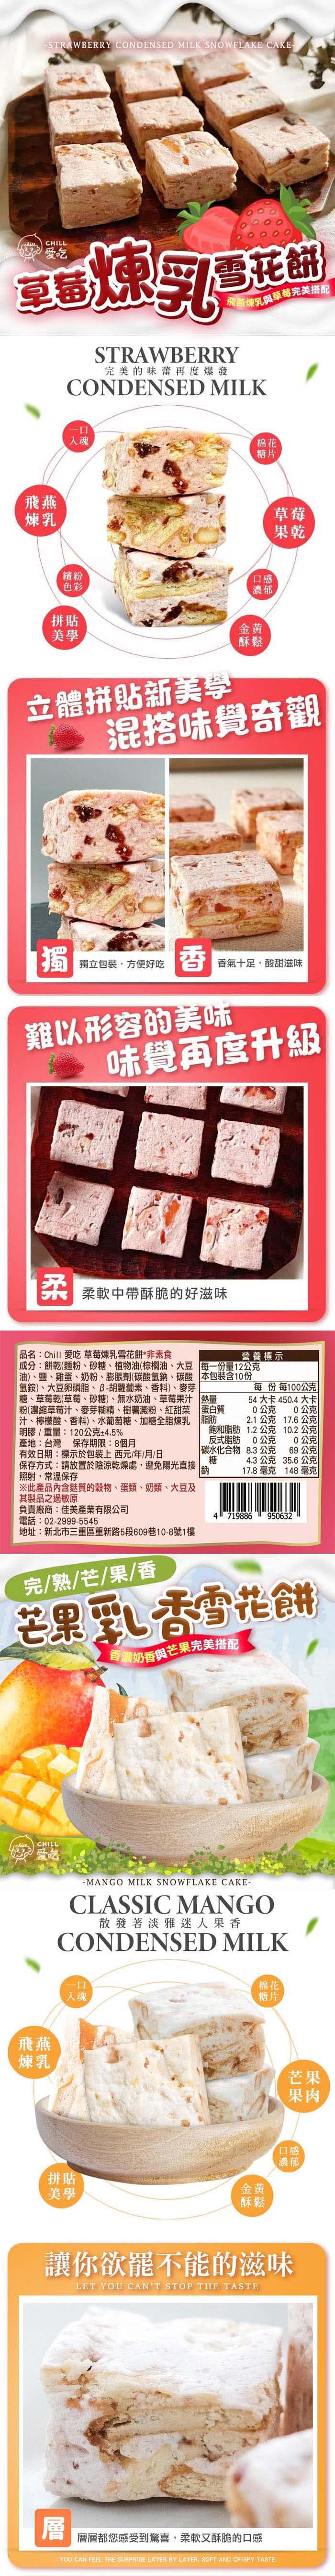 CHILL愛吃 繽紛水果雪花餅x12盒(120g/盒-草莓/